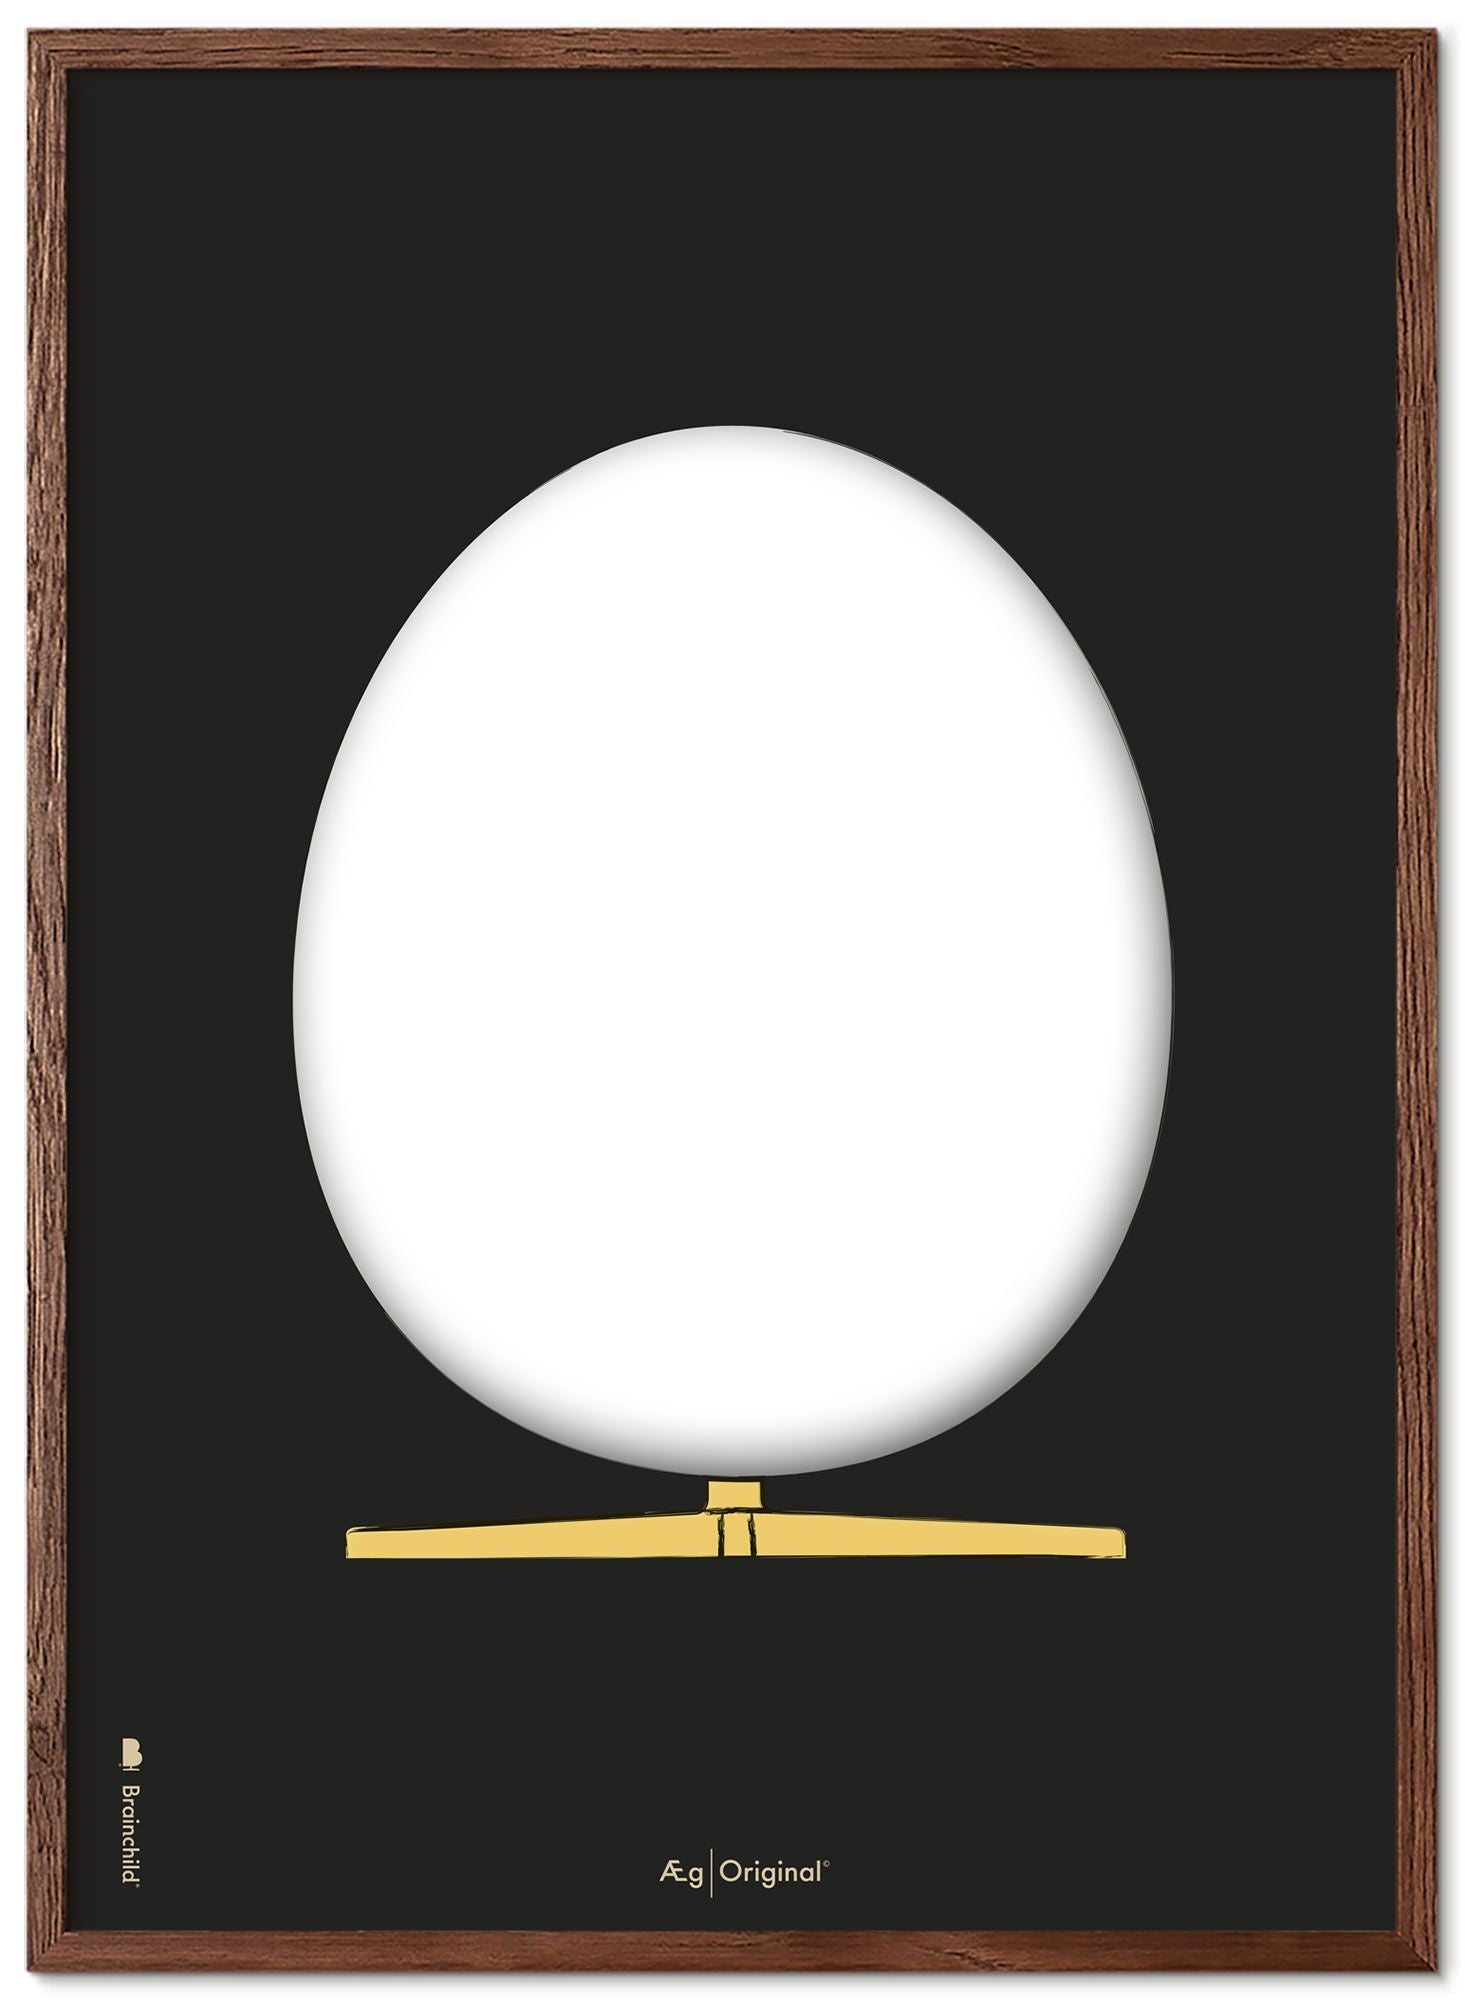 Prepare el marco de póster de boceto de diseño de huevo hecho de madera oscura A5, fondo negro